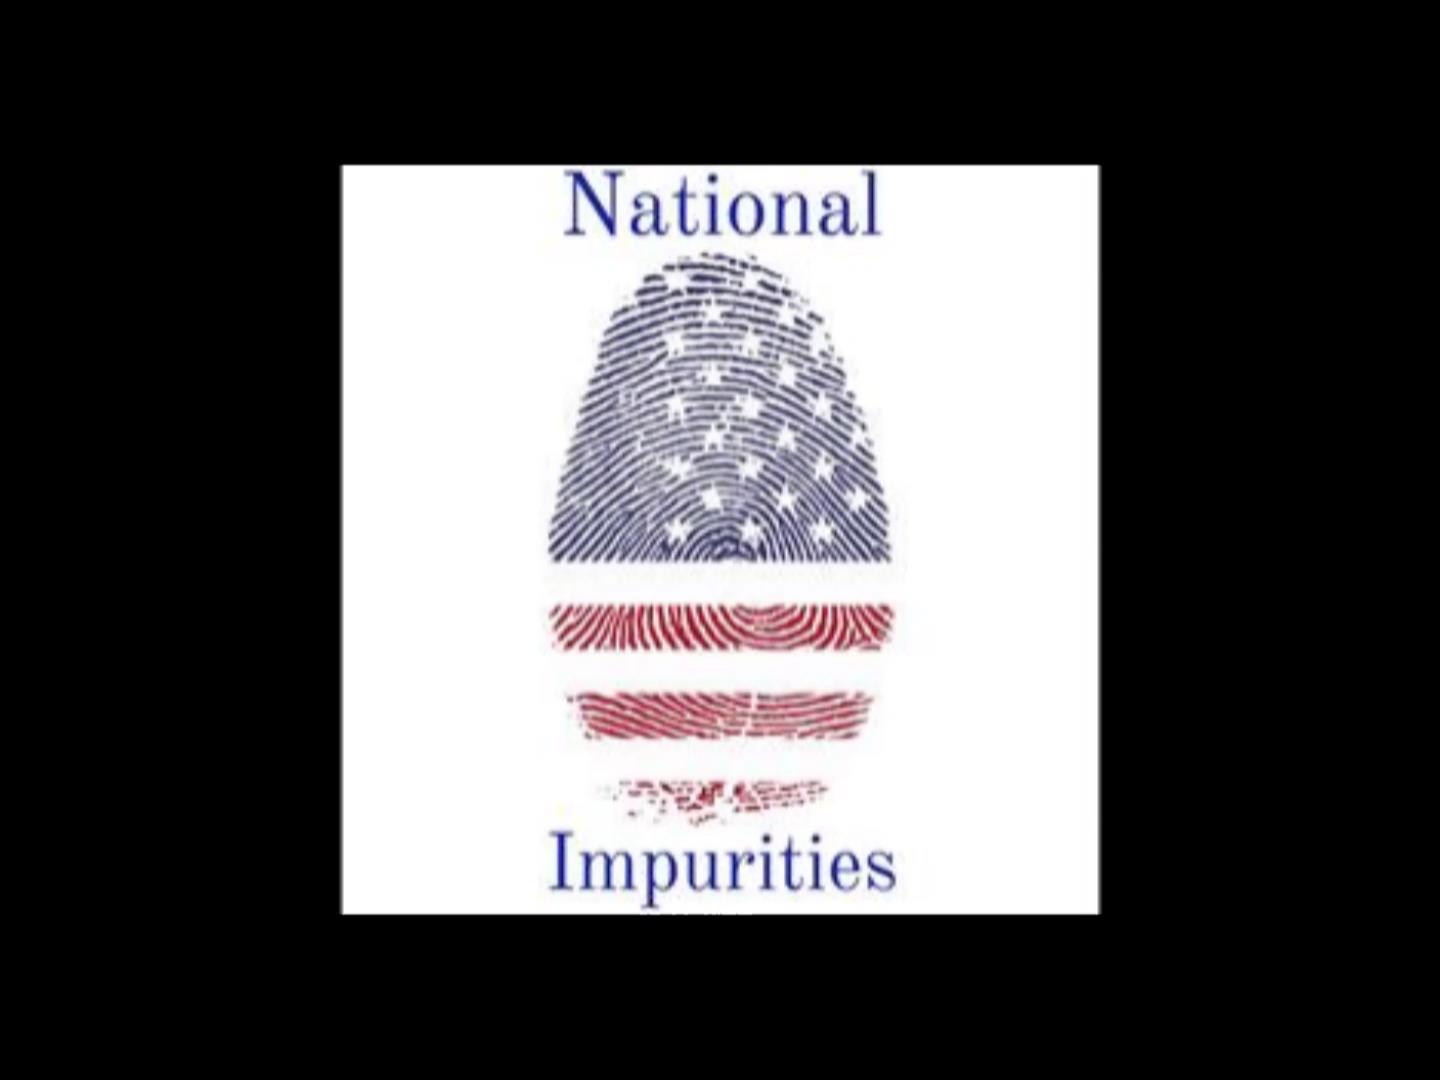  National Impurities – National Impurities